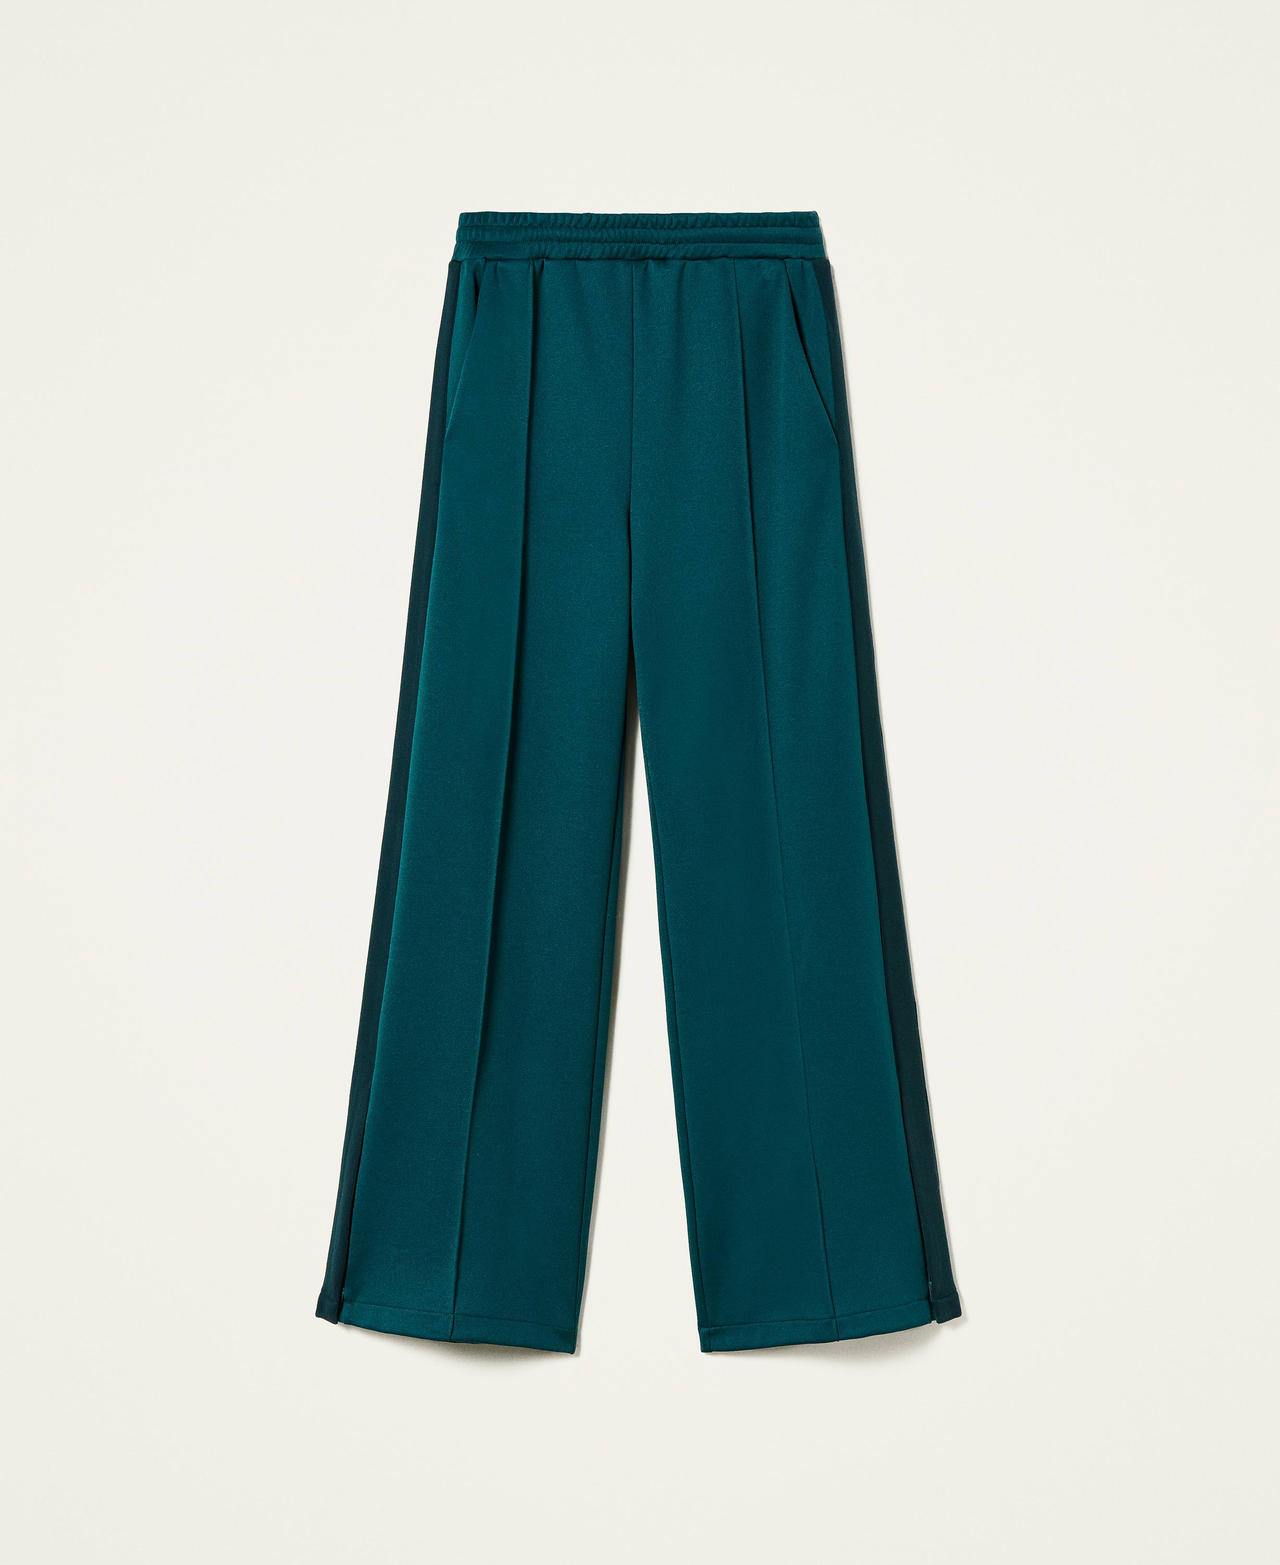 Pantalon palazzo avec bandes Bicolore Vert Foncé / Python Femme 212TT2361-0S